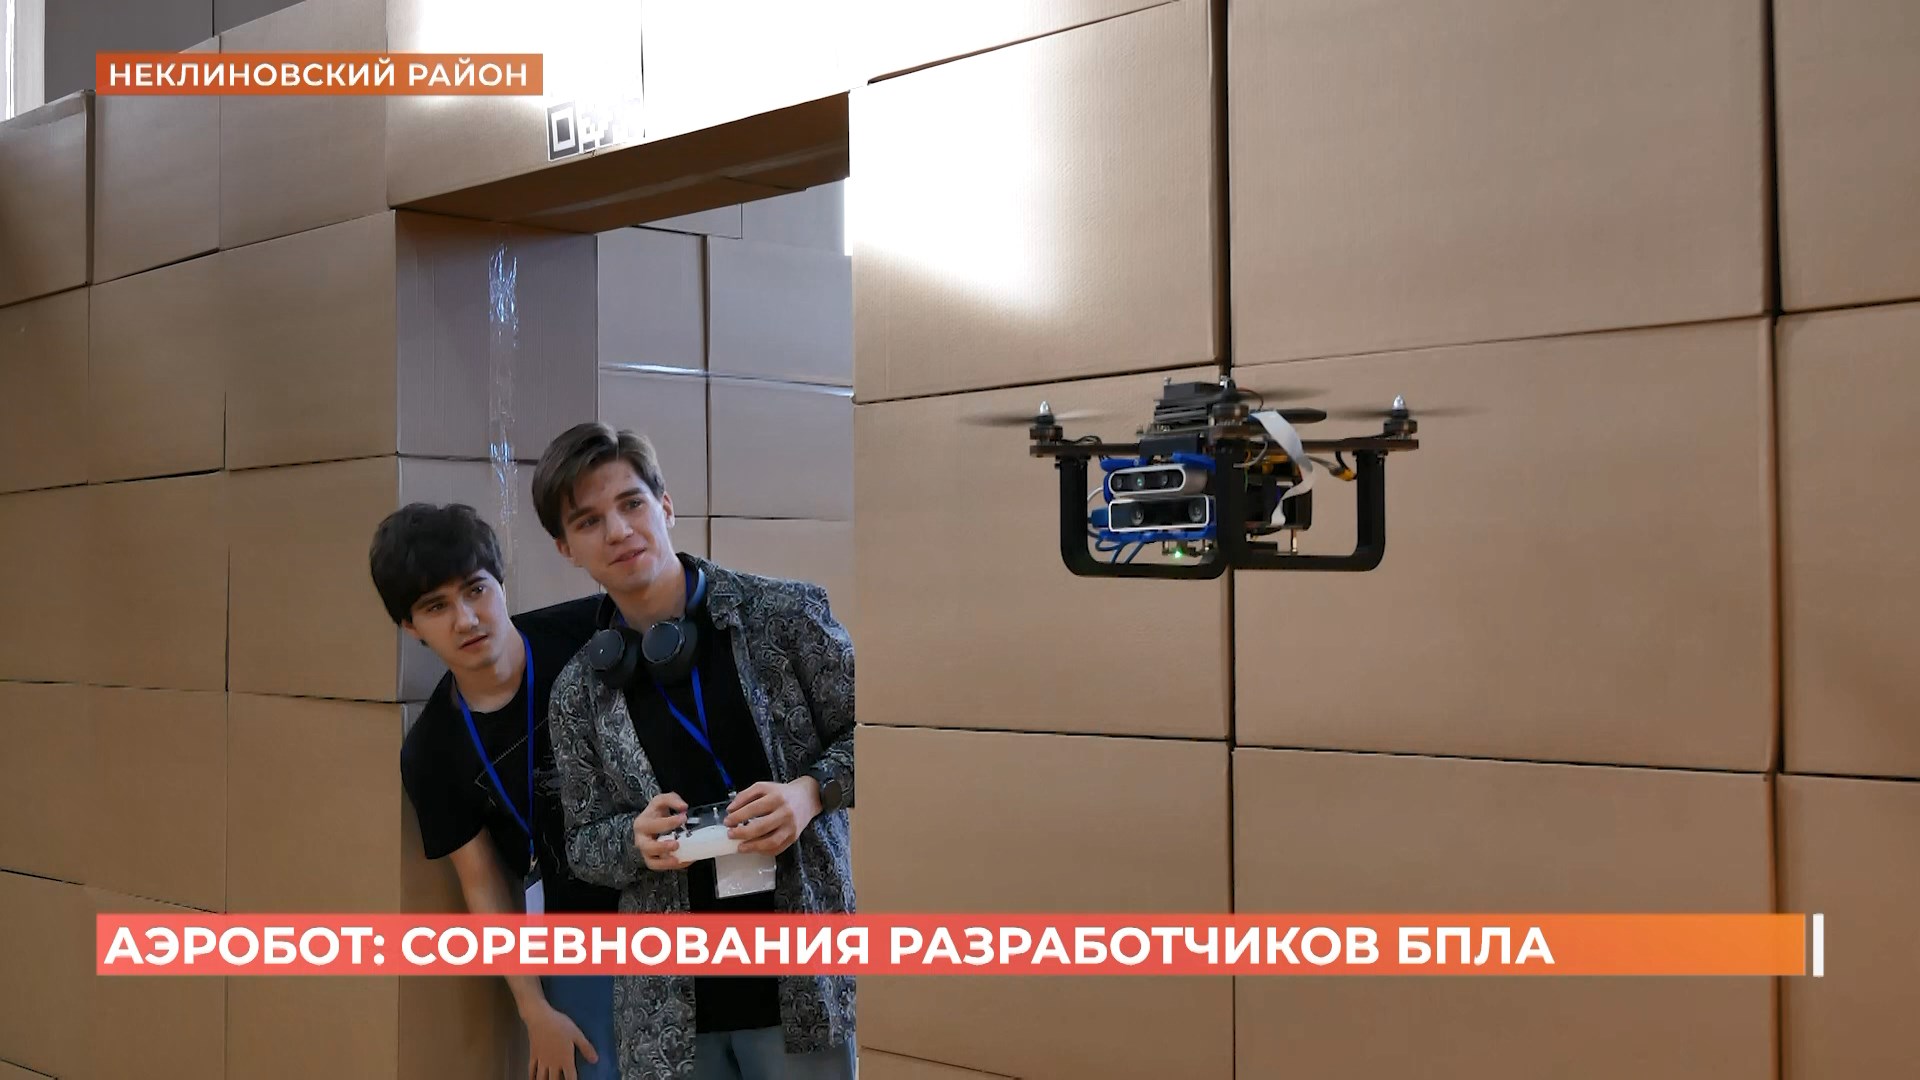 Соревнования разработчиков БПЛА «Аэробот» прошли в Ростовской области